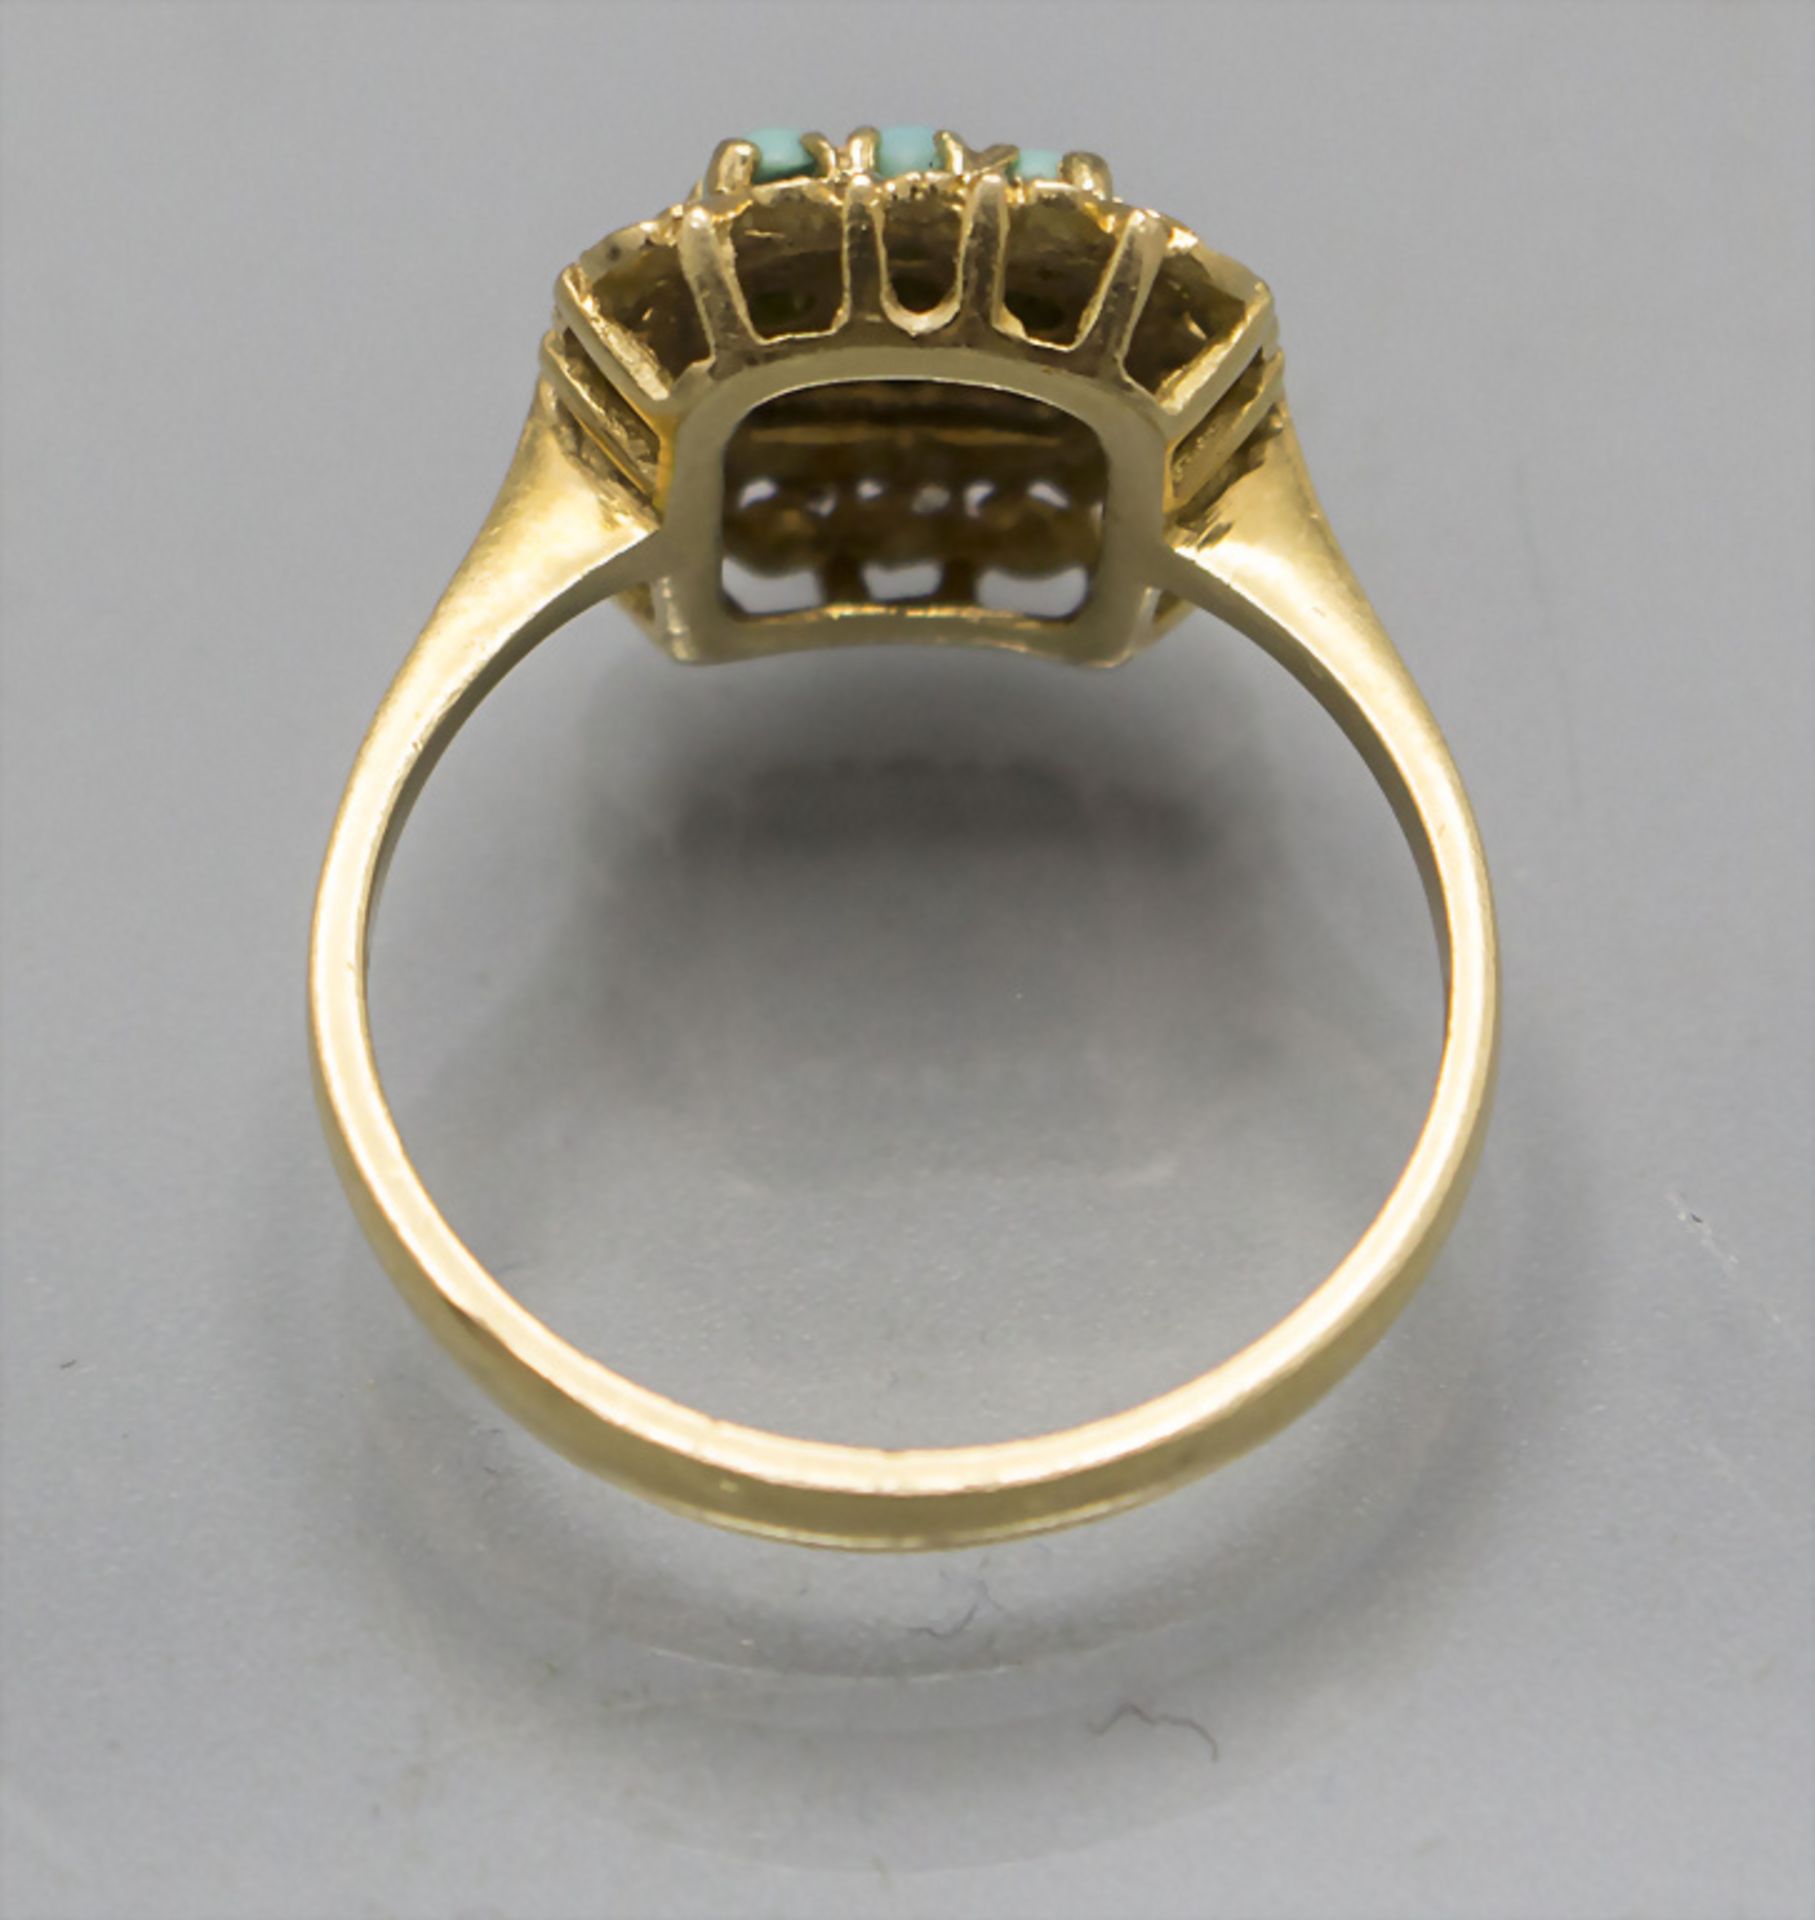 Damenring mit Türkisen / A ladies 18 ct gold ring with turquoises - Image 4 of 4